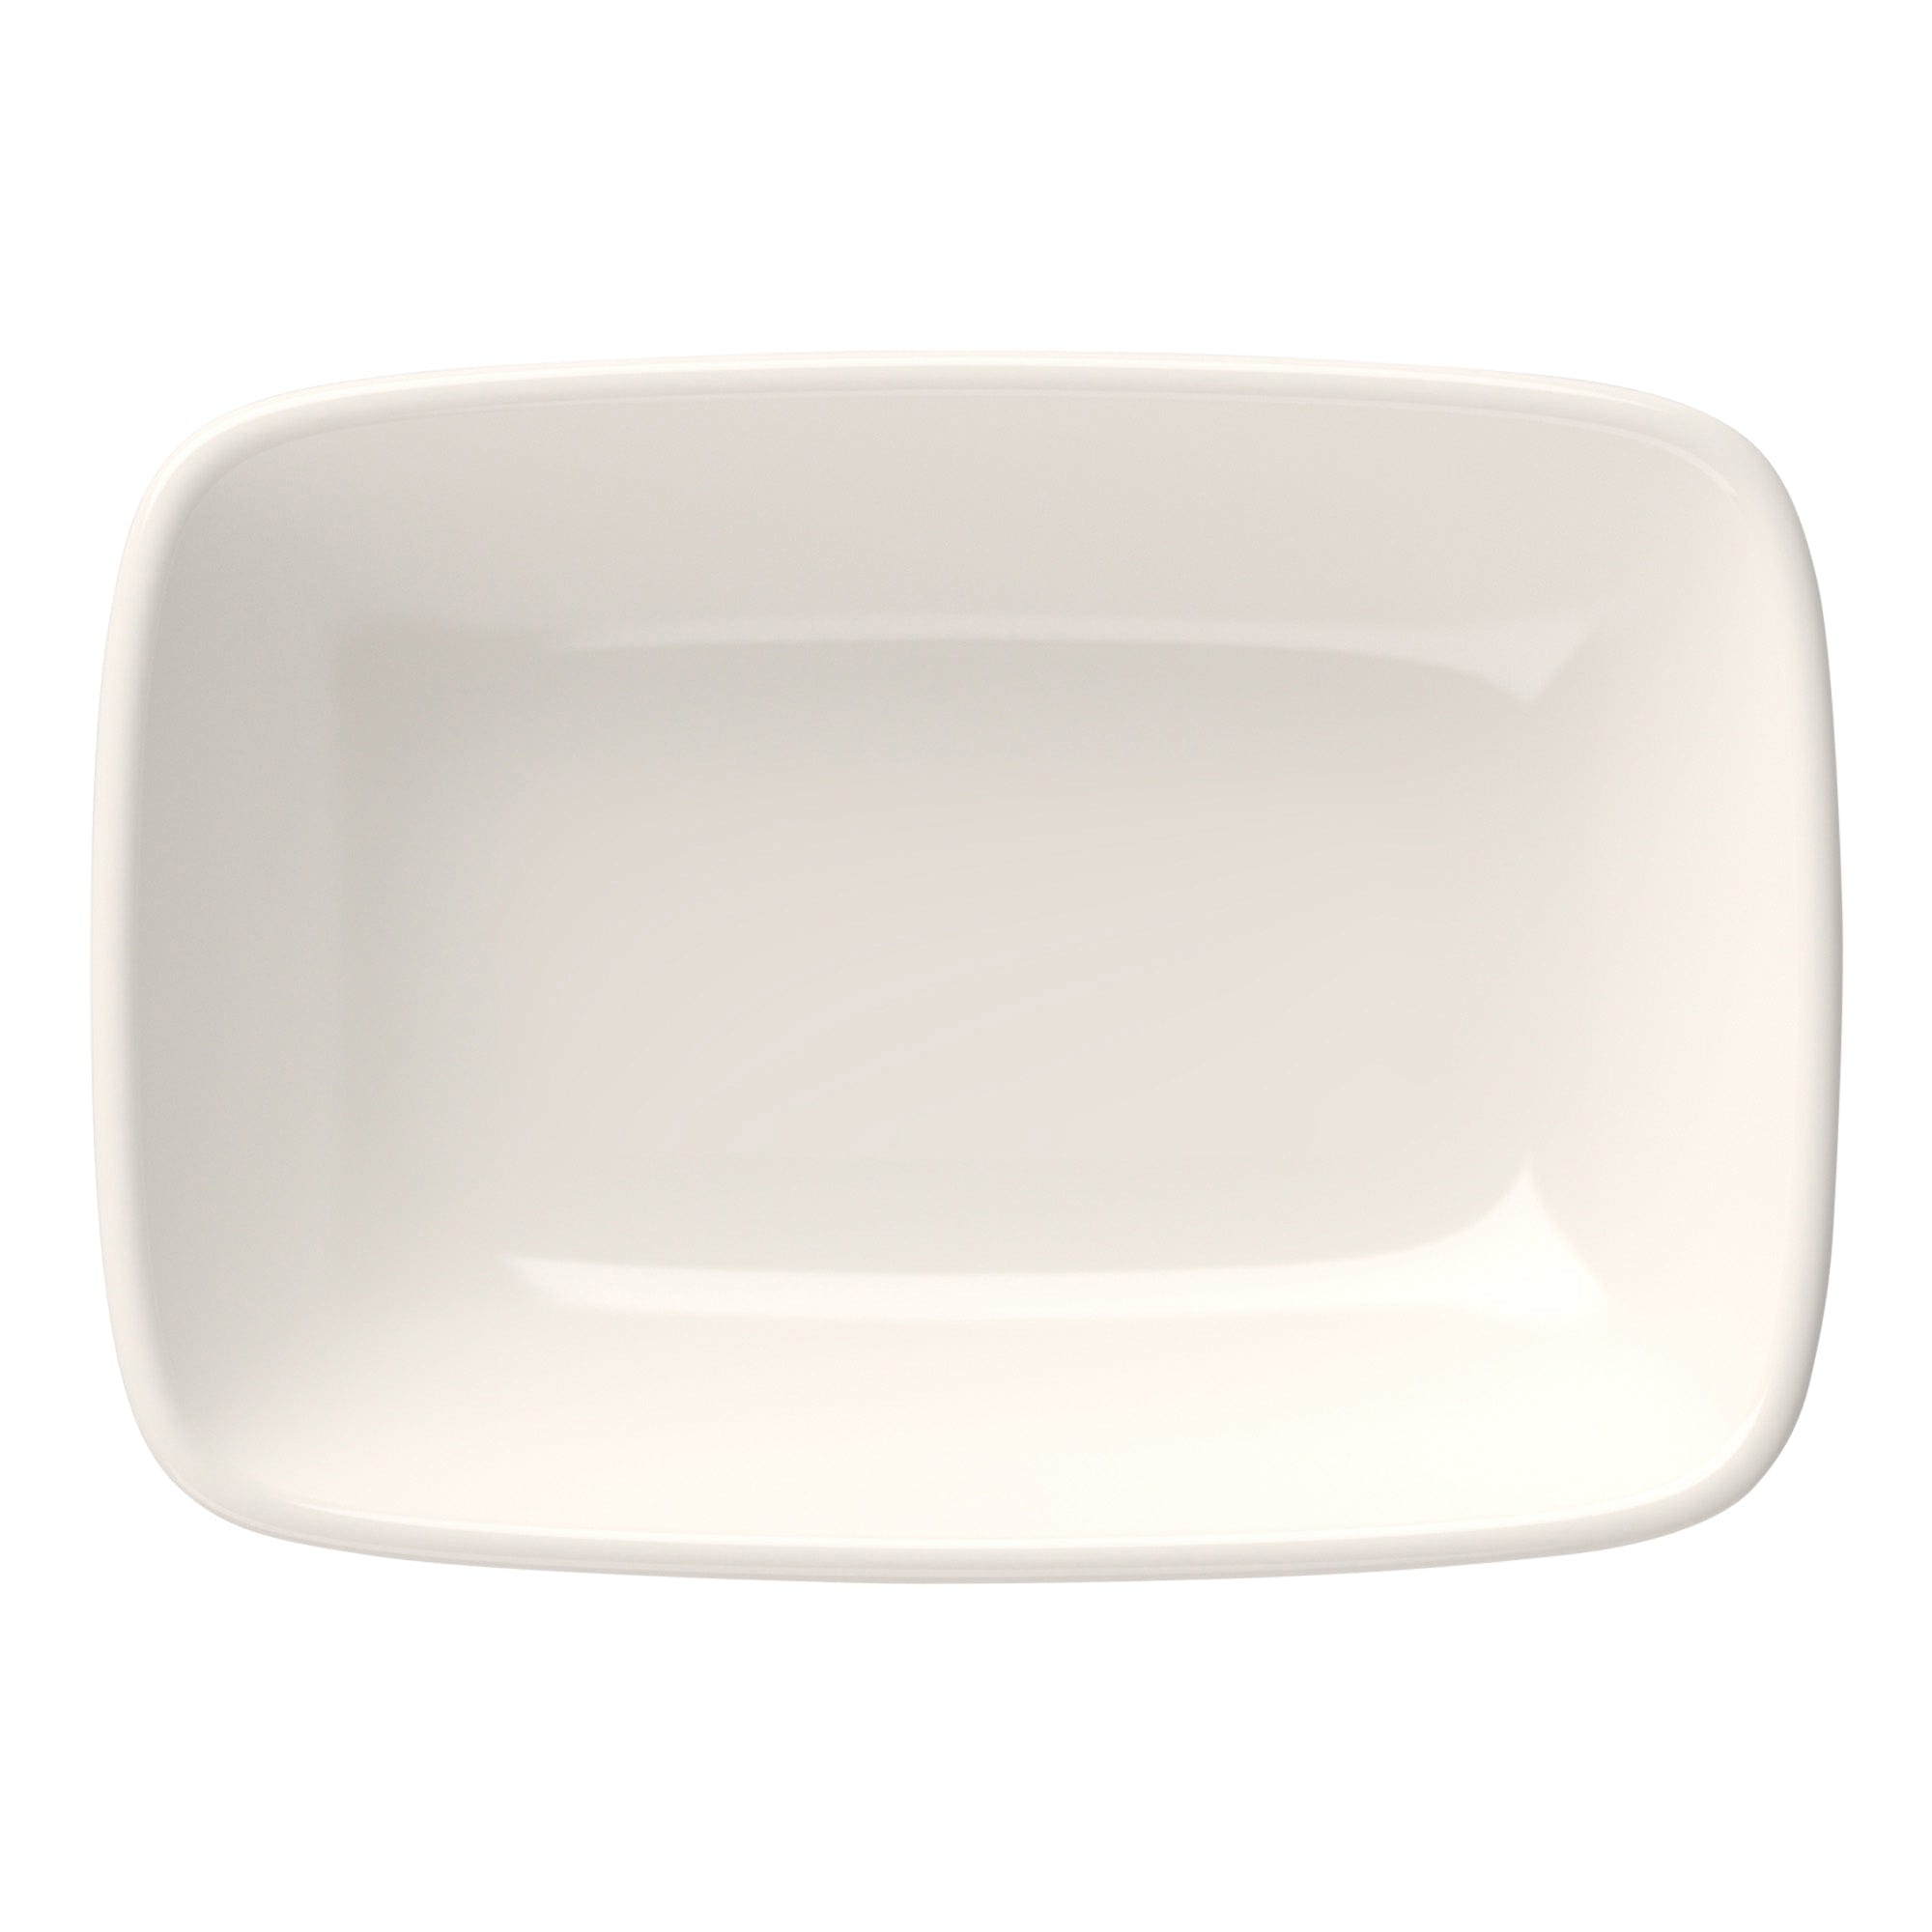 Quadro Porcelain Rectangular Platter 11.8"x4.4"